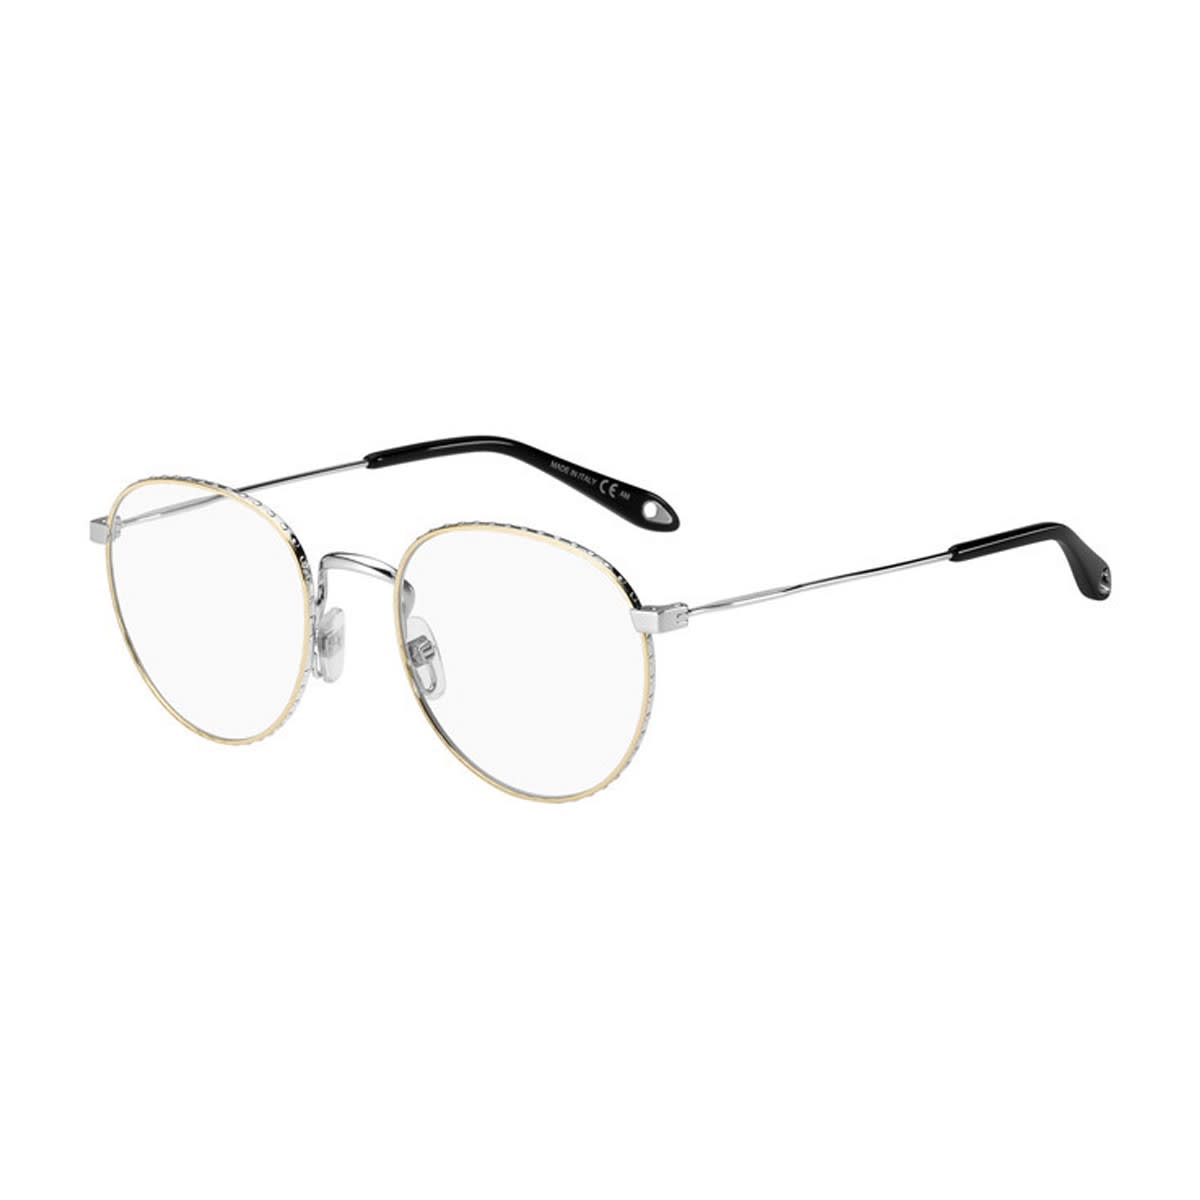 Gv 0072 Glasses